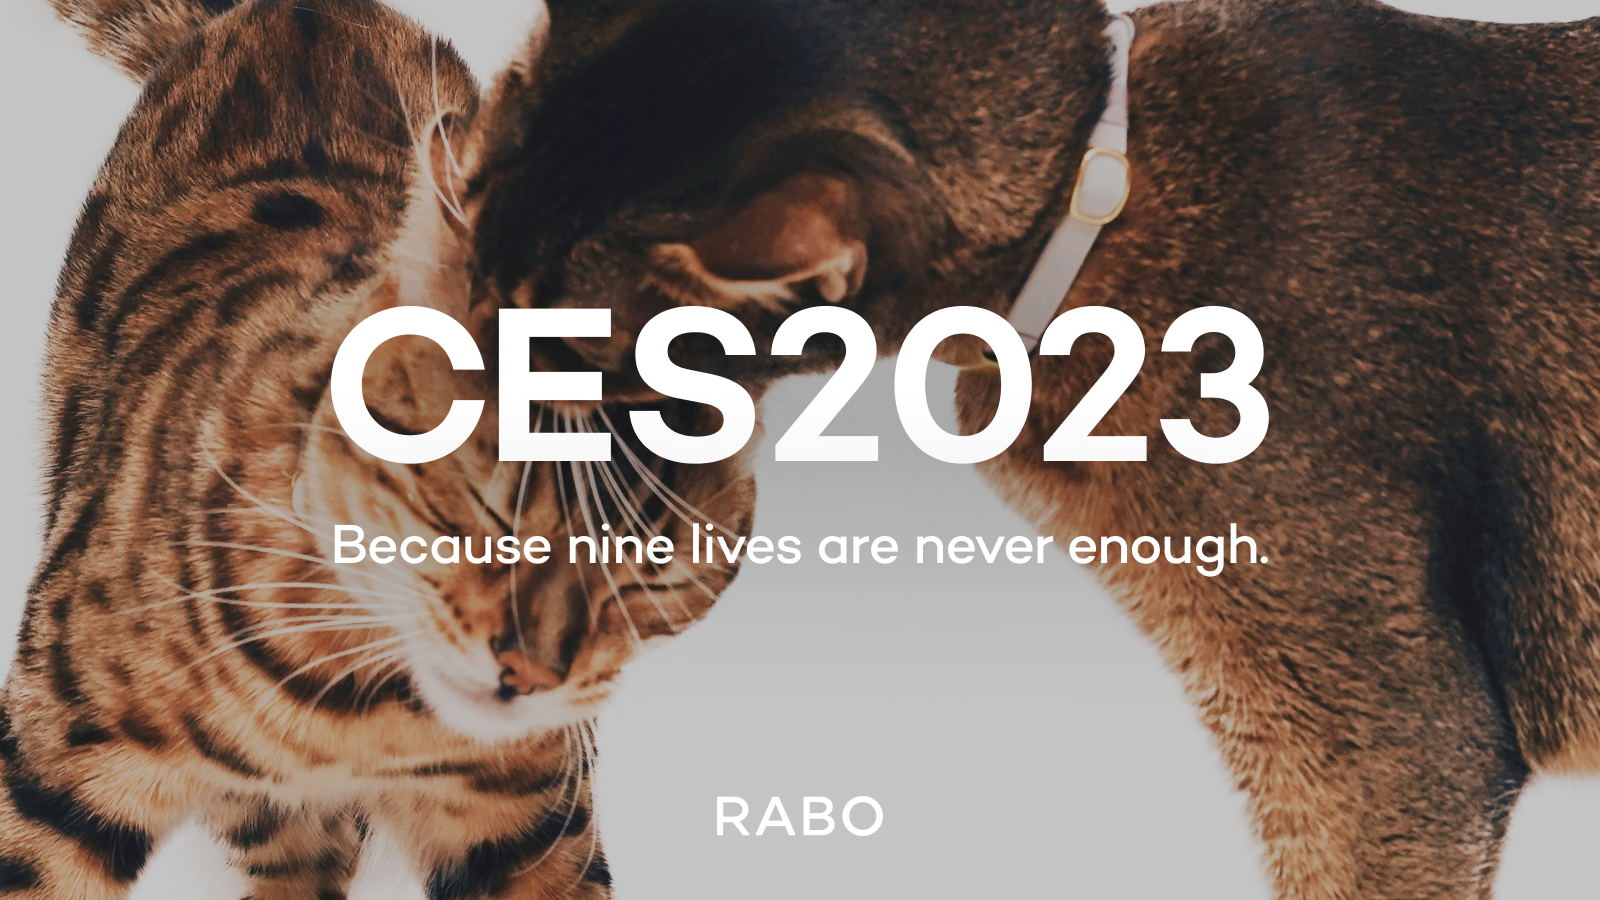 Catlog®（キャトログ）を展開するRABO、世界最大規模のテクノロジー見本市「CES 2023」へ出展